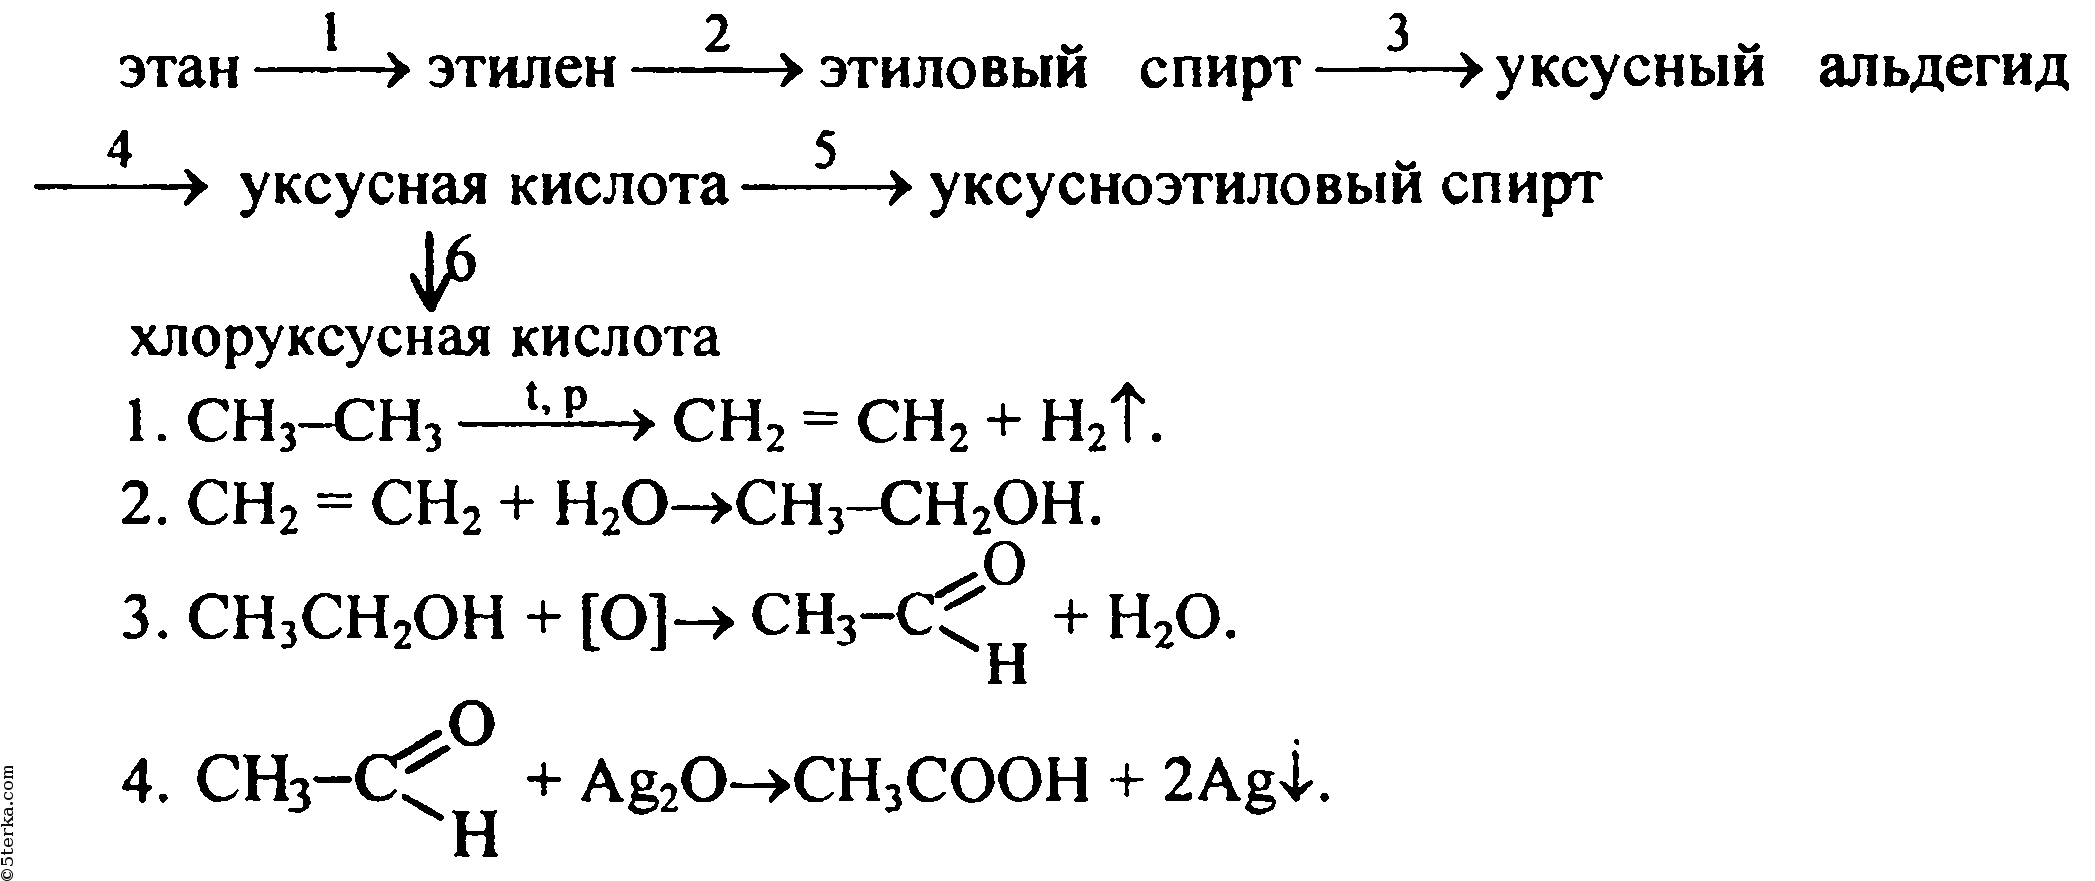 Этан в хлорэтан реакция. Схема получения альдегидов из метана. Схема реакции уксусной кислоты.